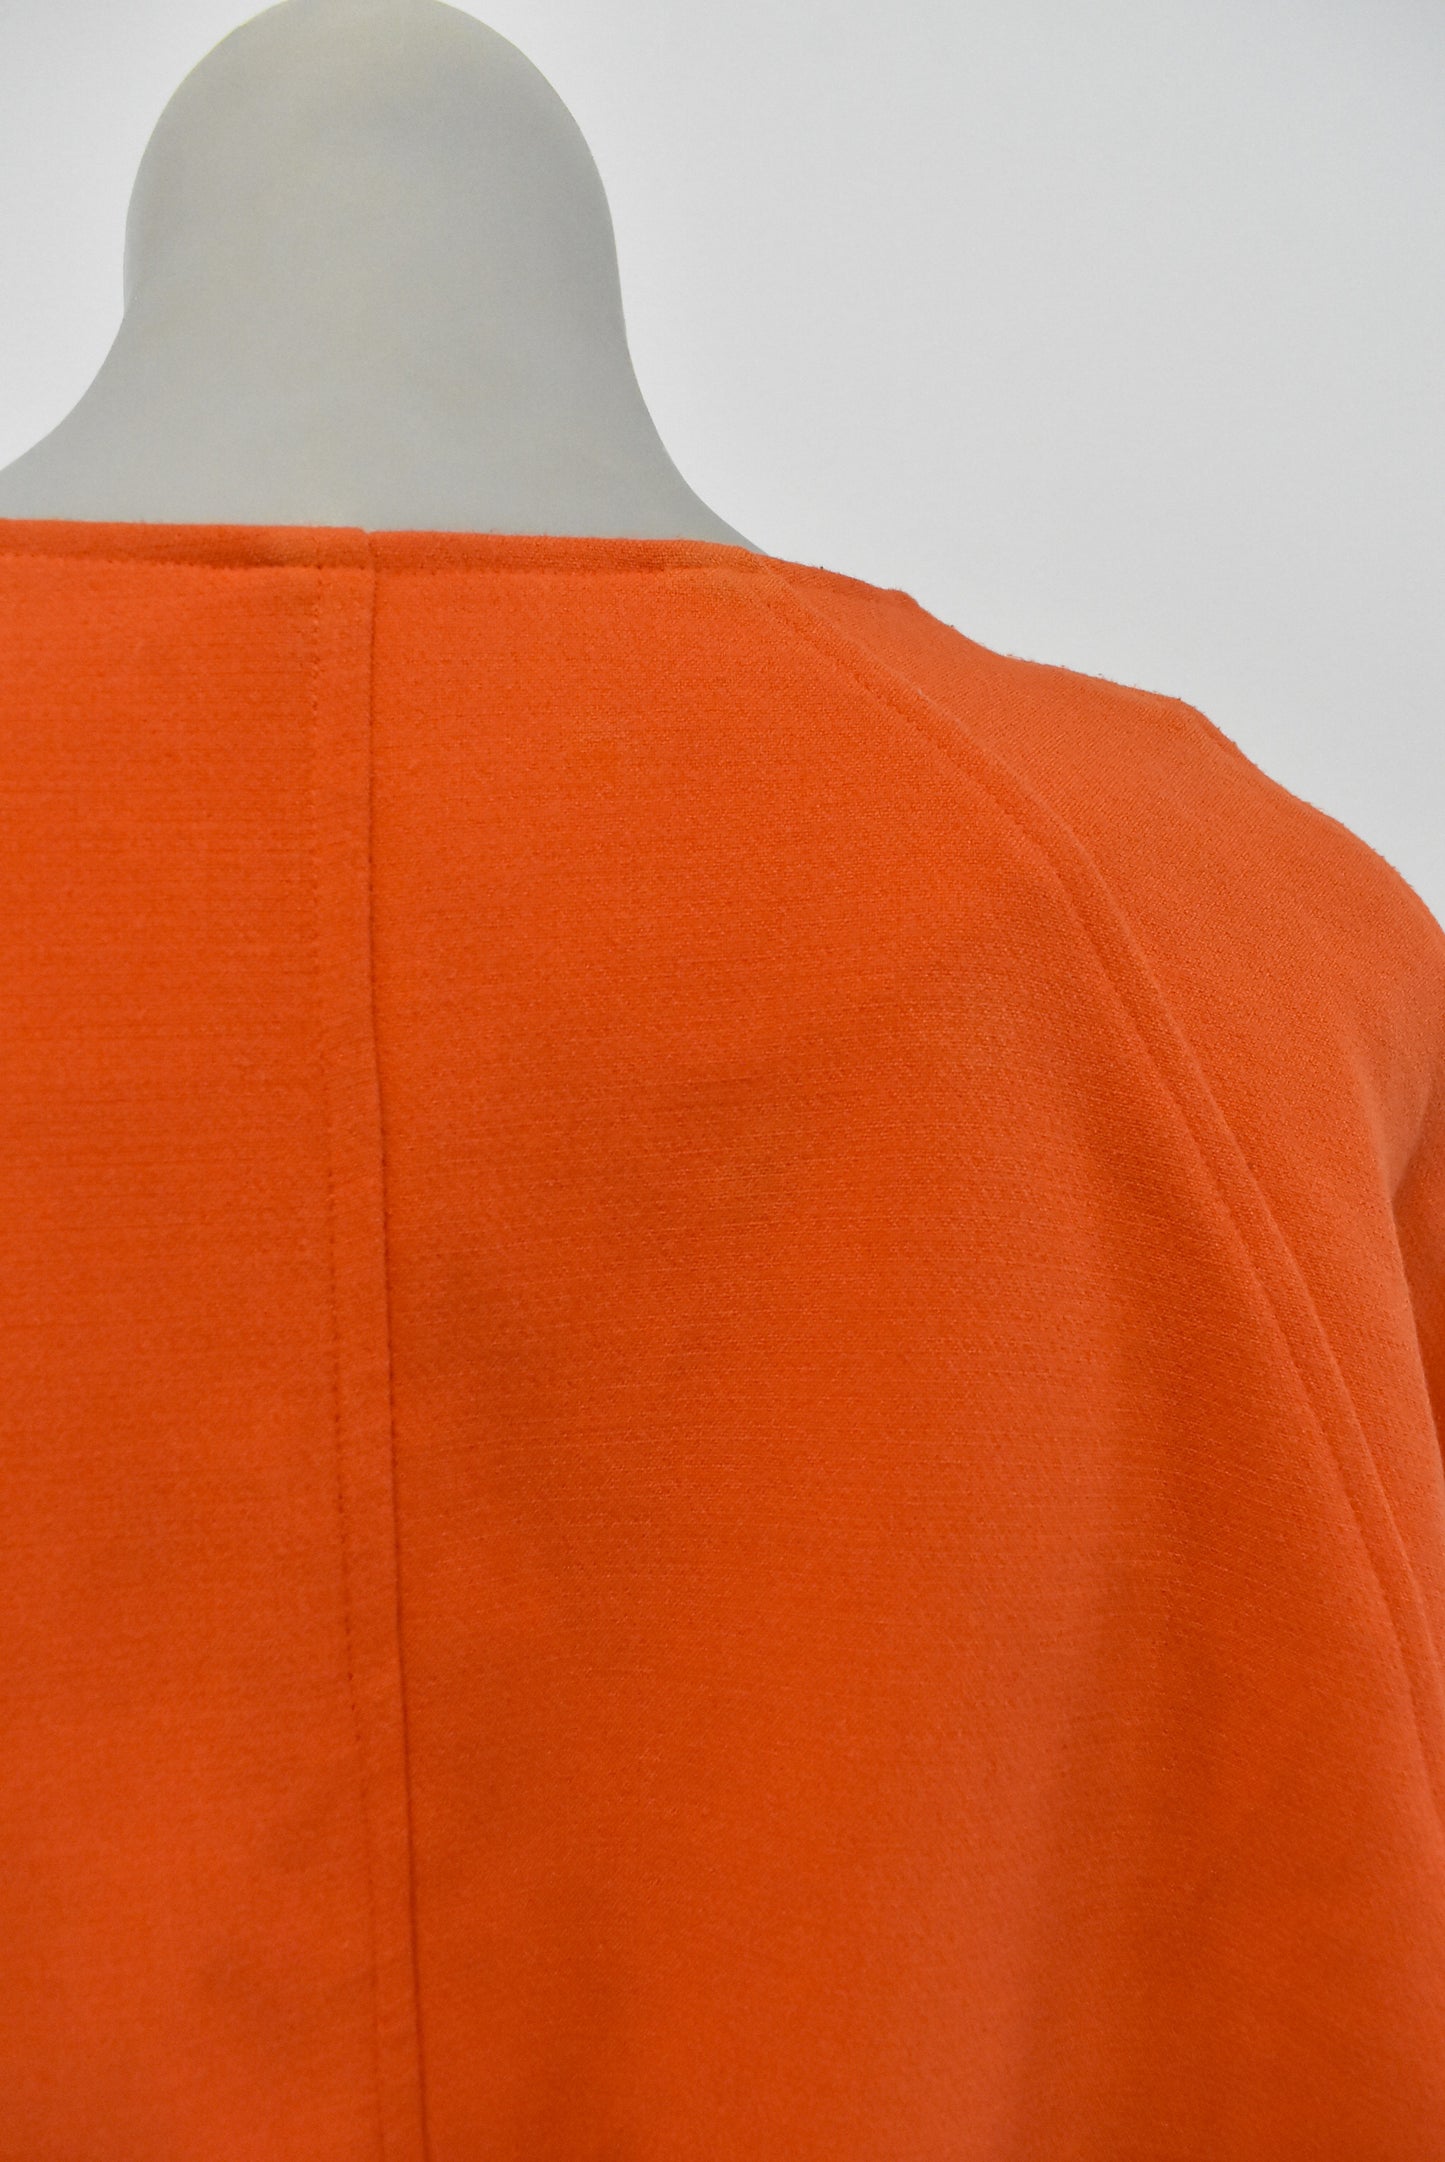 Moochi (NZ) cropped open front orange jacket/top, 10